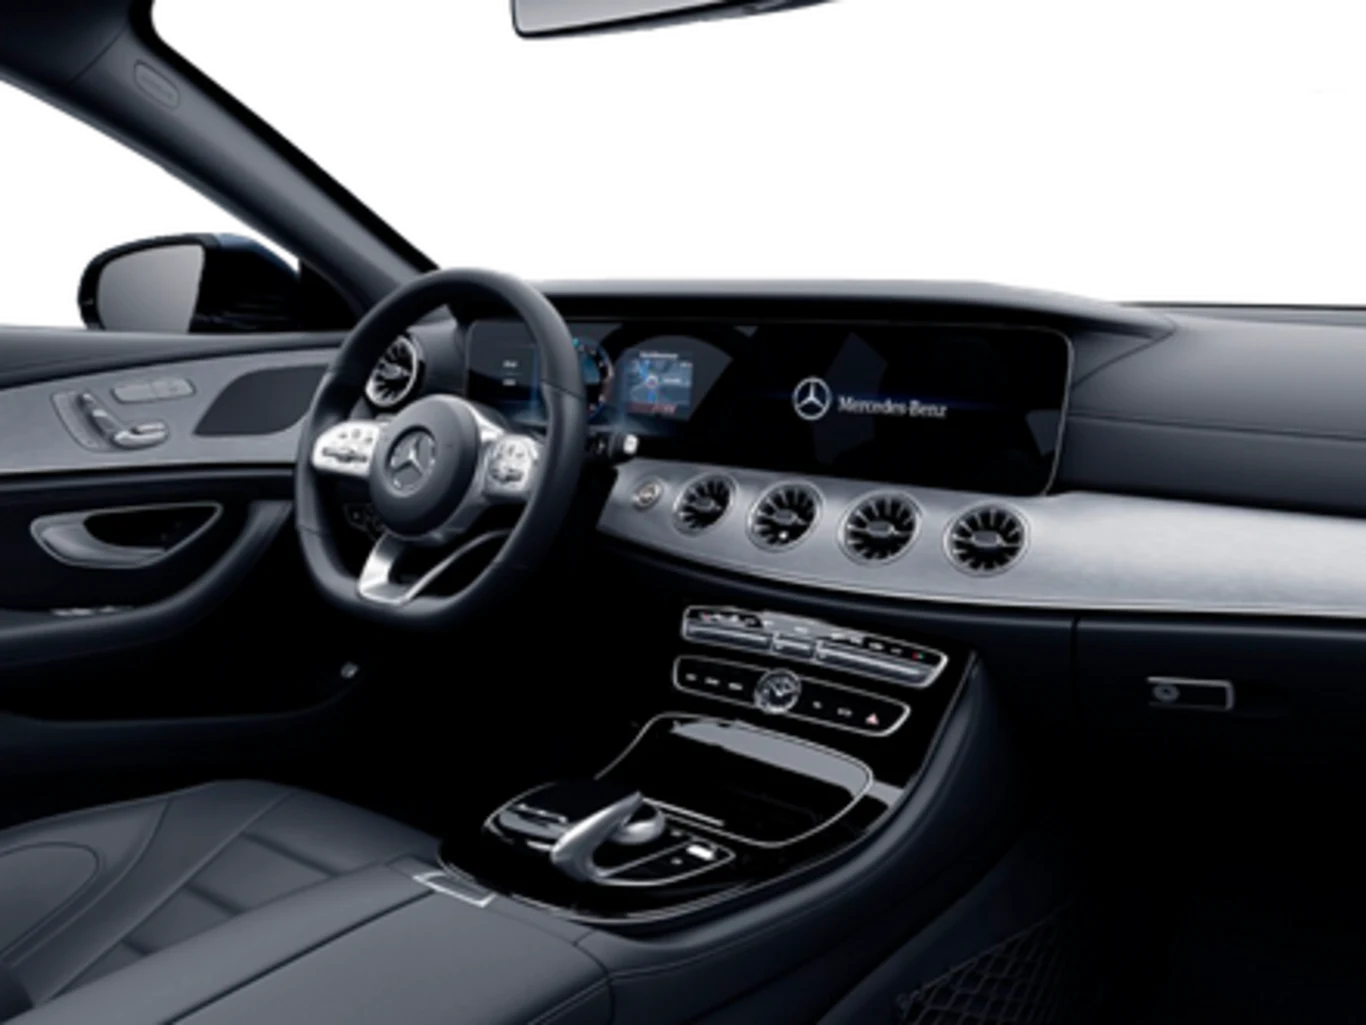 Mercedes-Benz CLS 450 3.0 TB 4MATIC SPORT (Híbrido)